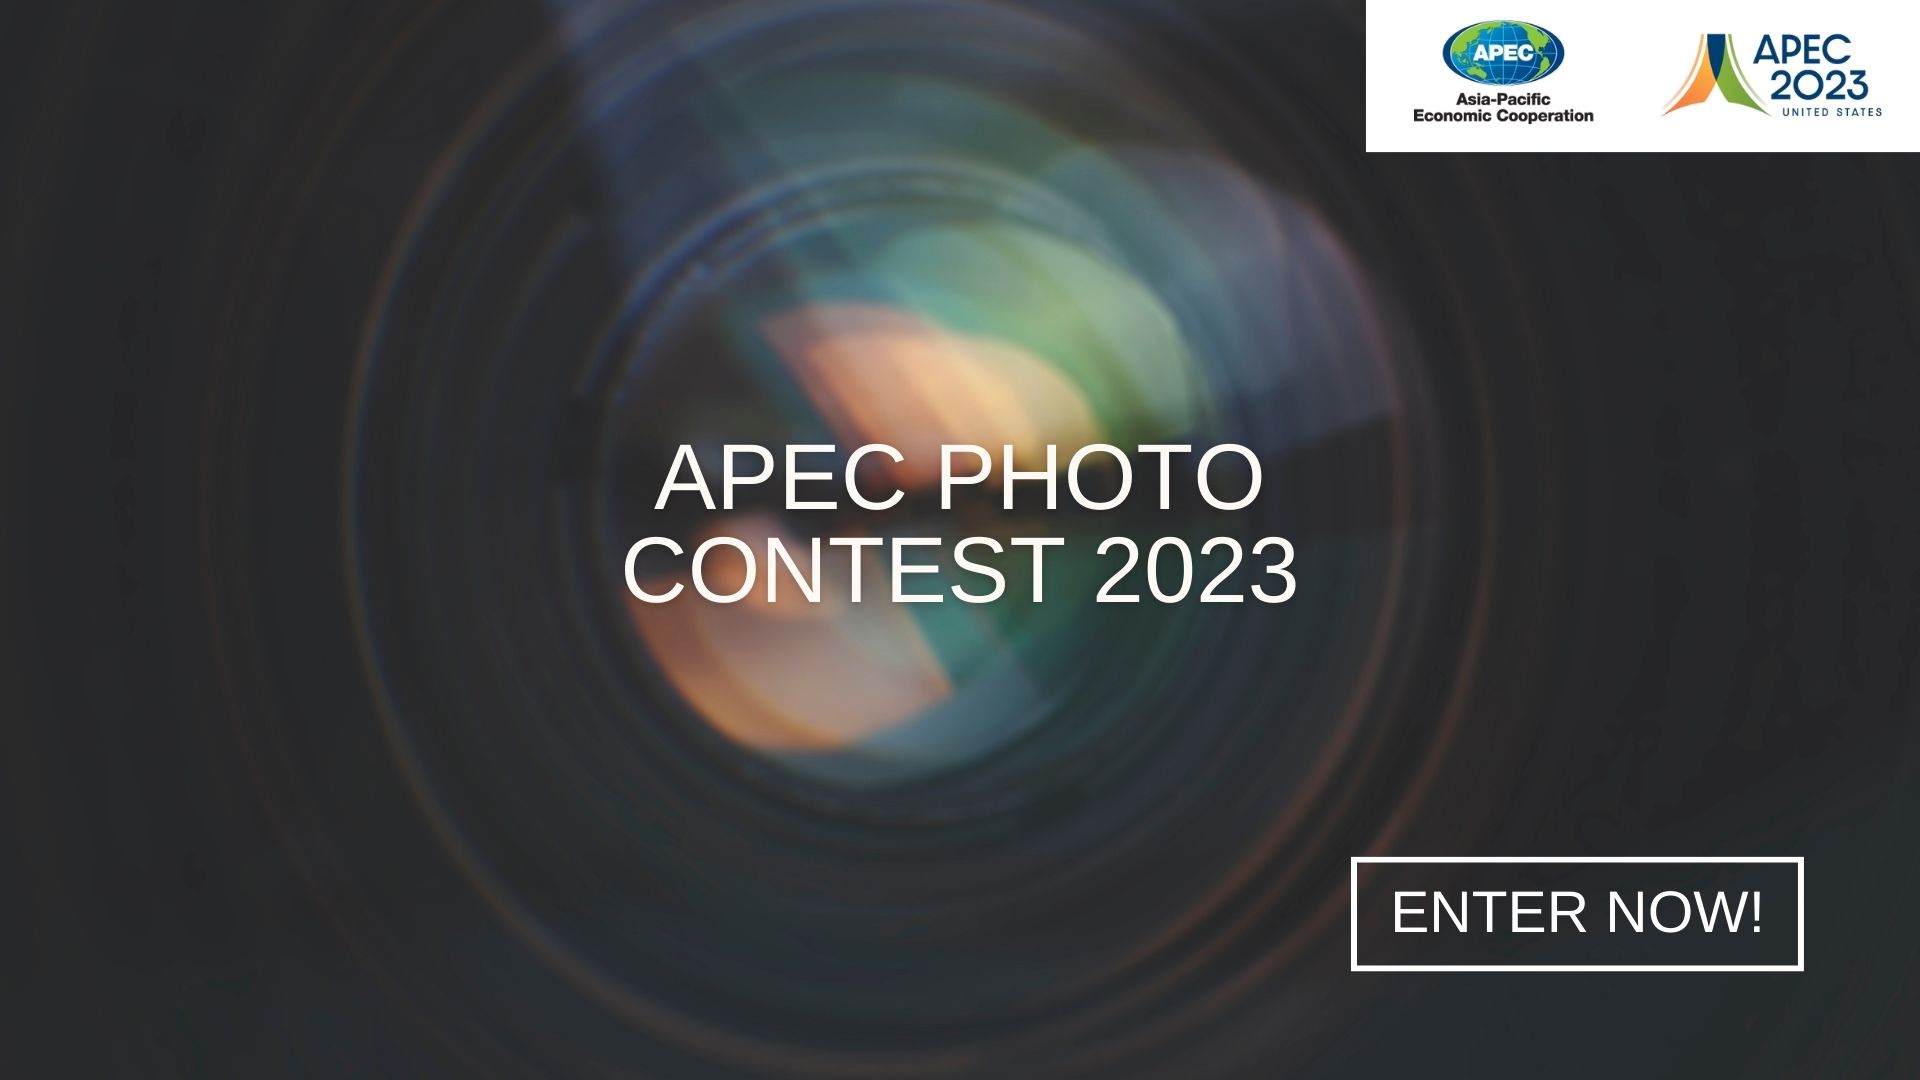 APEC Photo Contest 2023 APEC picture